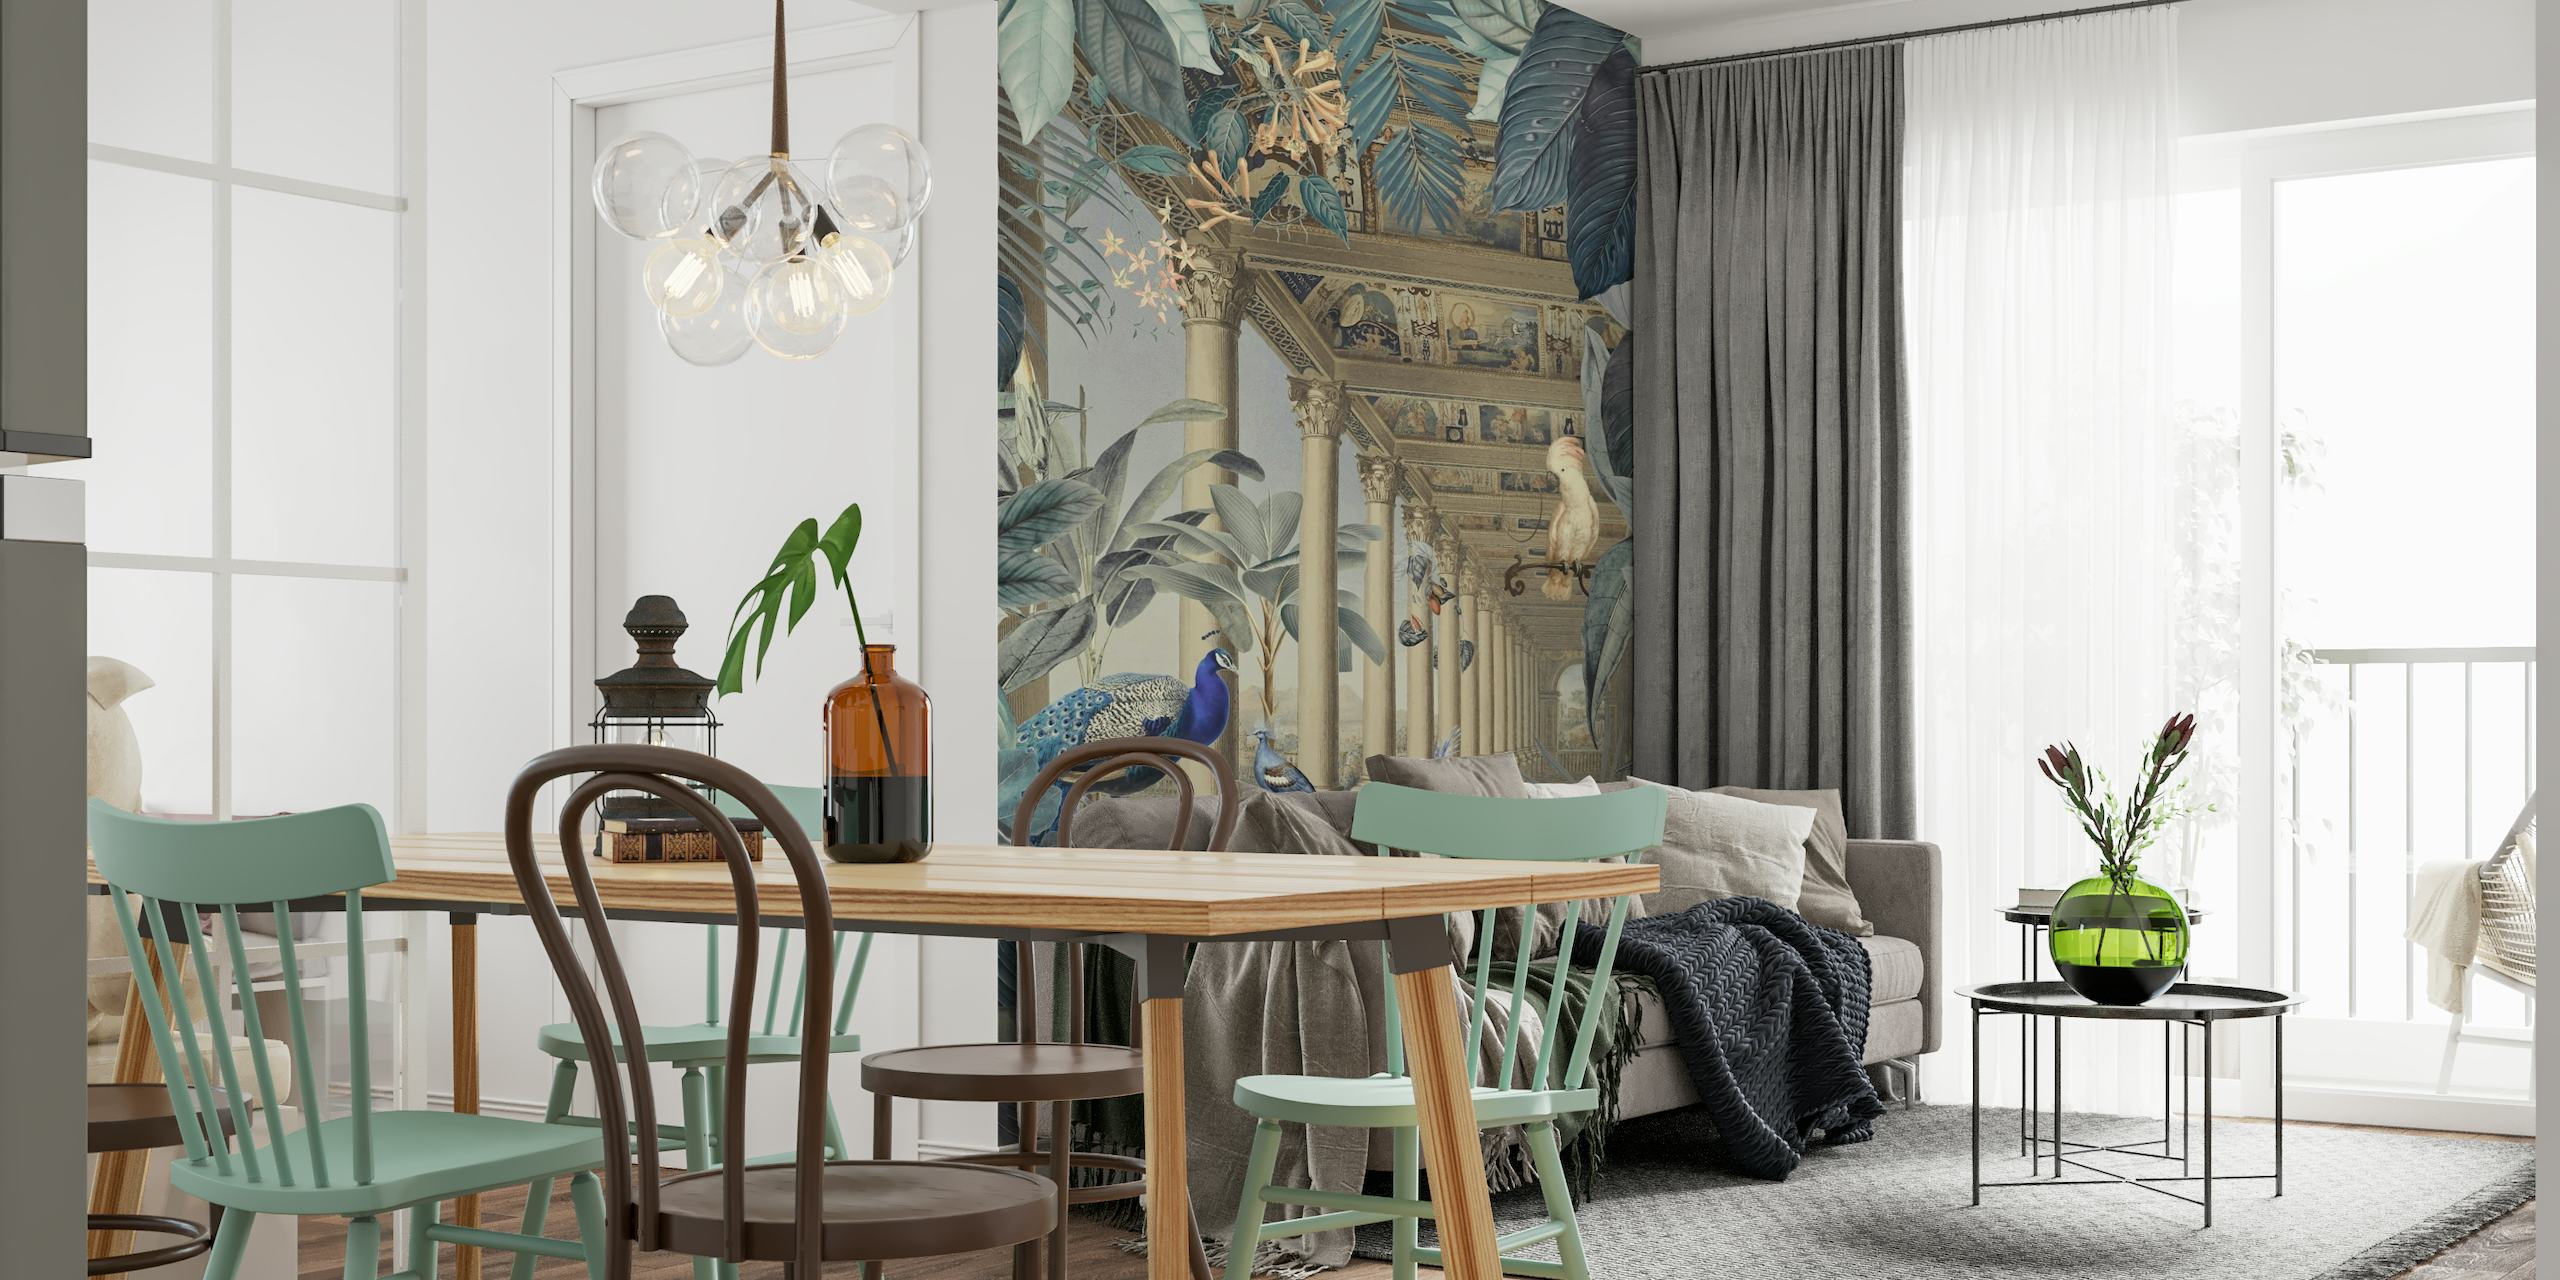 Een fotobehang met pauwthema met een mix van weelderig junglegebladerte en klassieke architectuurruïnes.